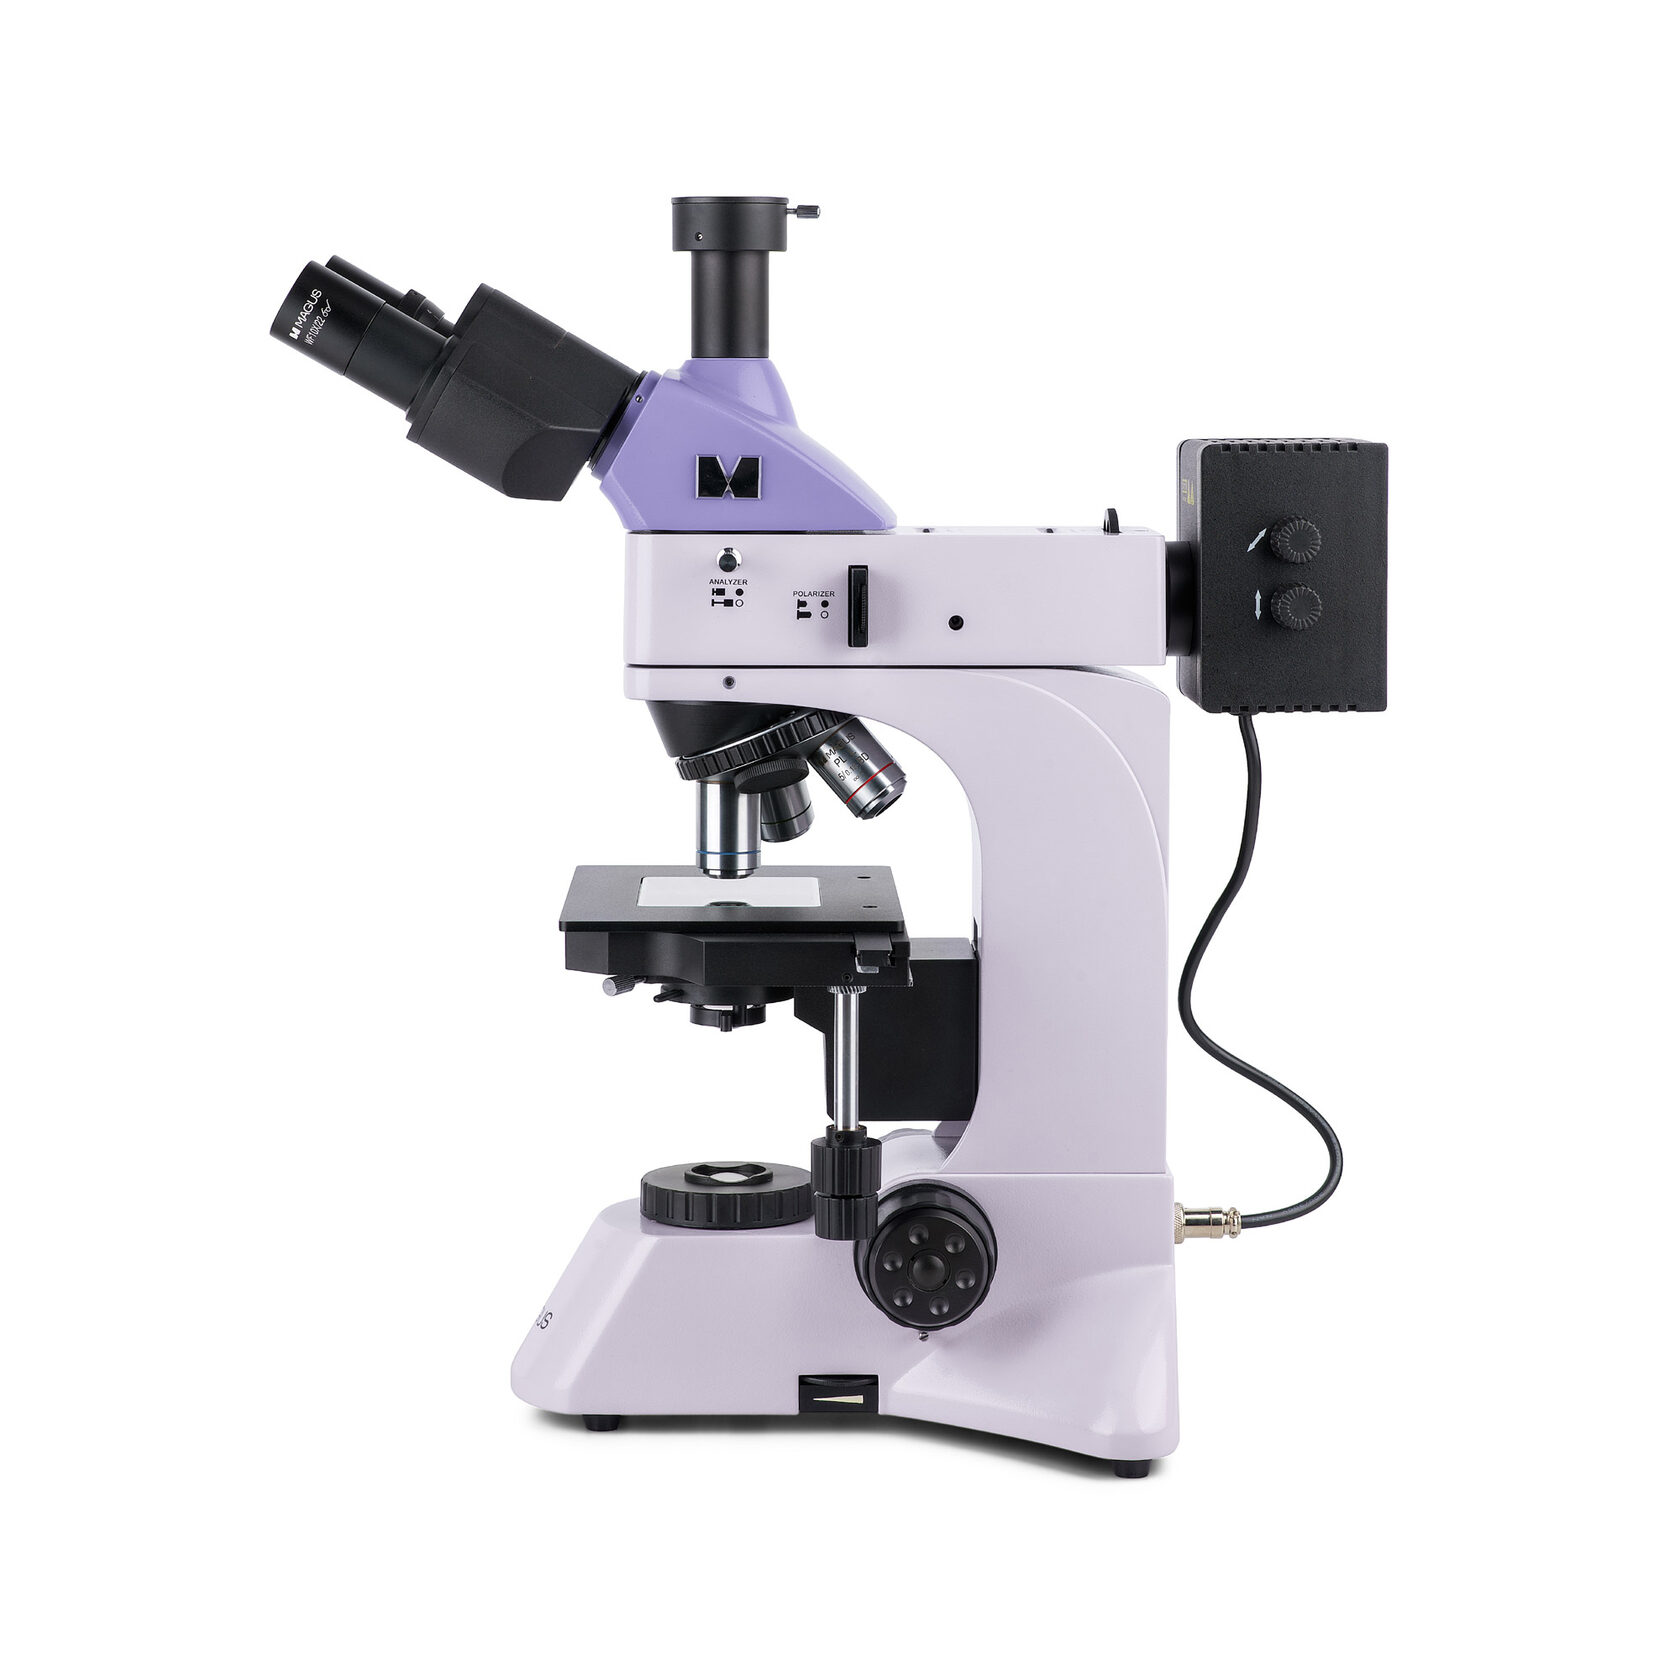 Металлографический микроскоп MAGUS Metal 600 BD